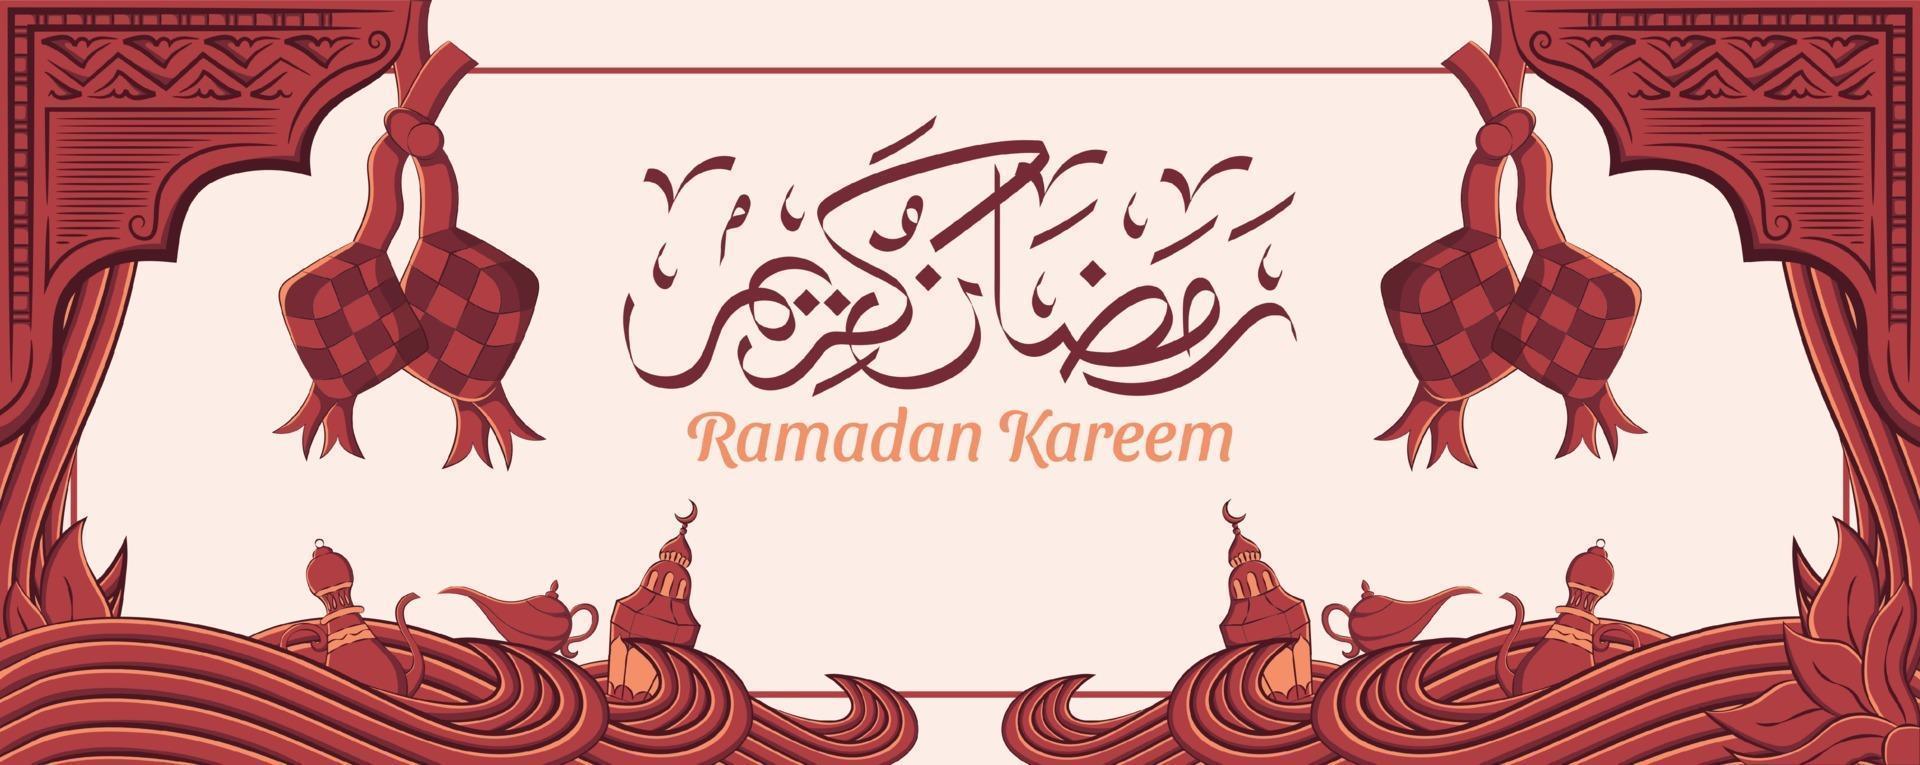 bannière de ramadan kareem avec ornement illustration islamique dessinés à la main sur fond blanc. vecteur